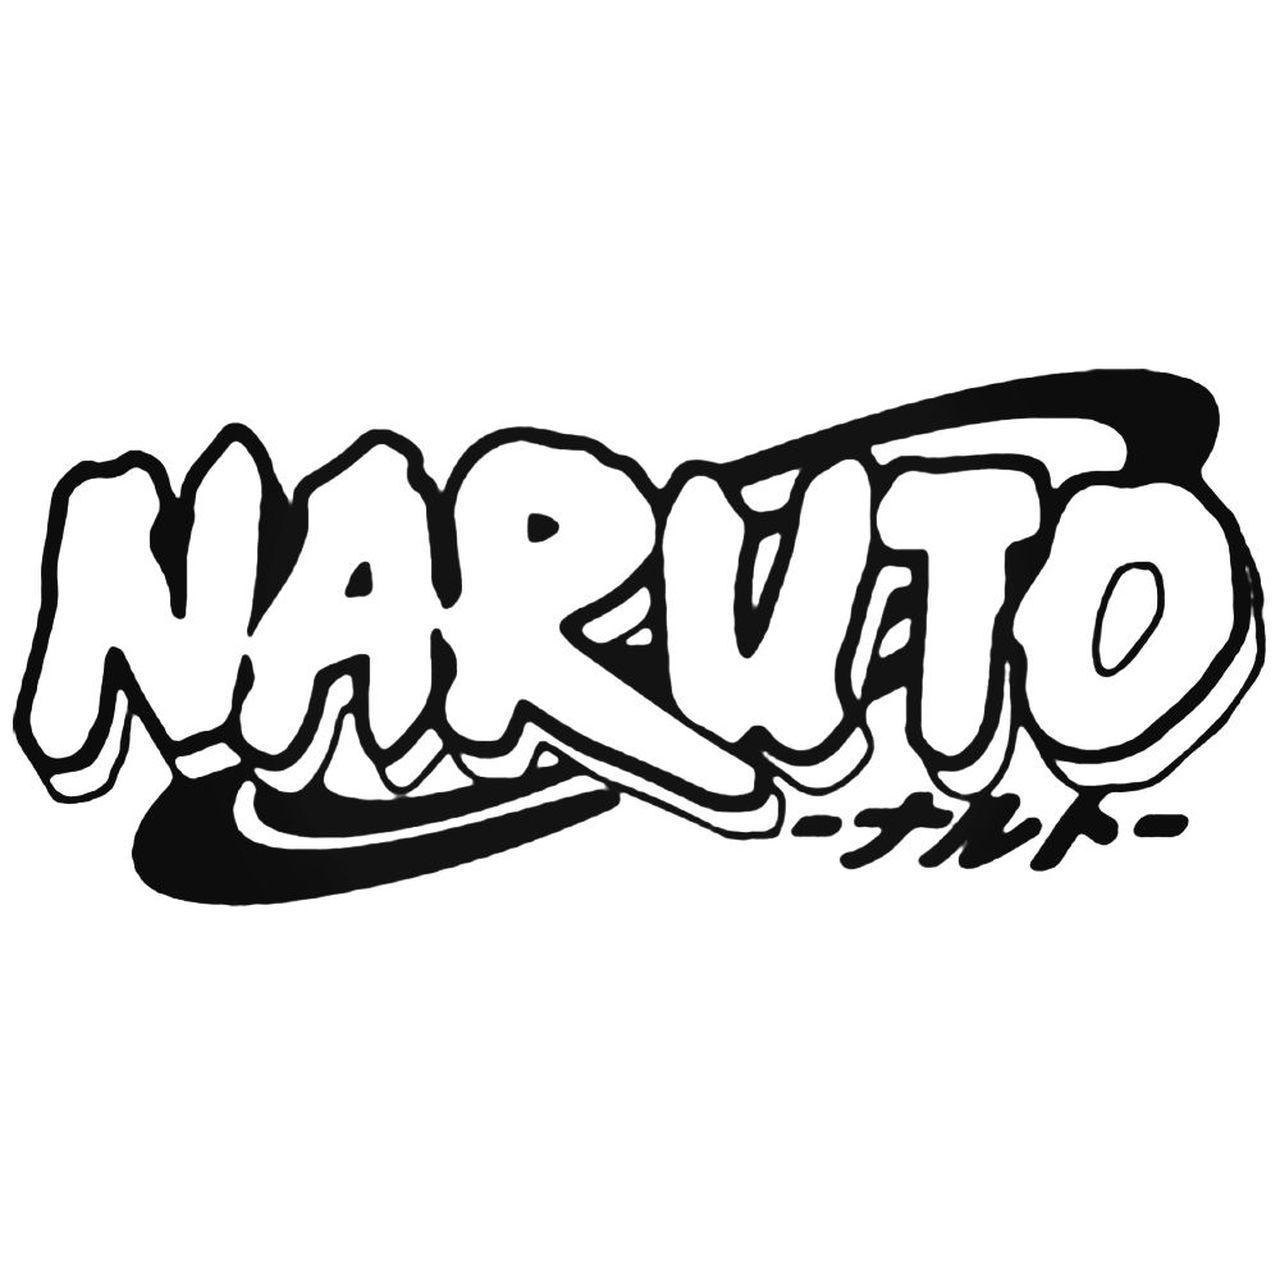 Naruto Logo - Naruto Naruto Logo Silhouette Decal